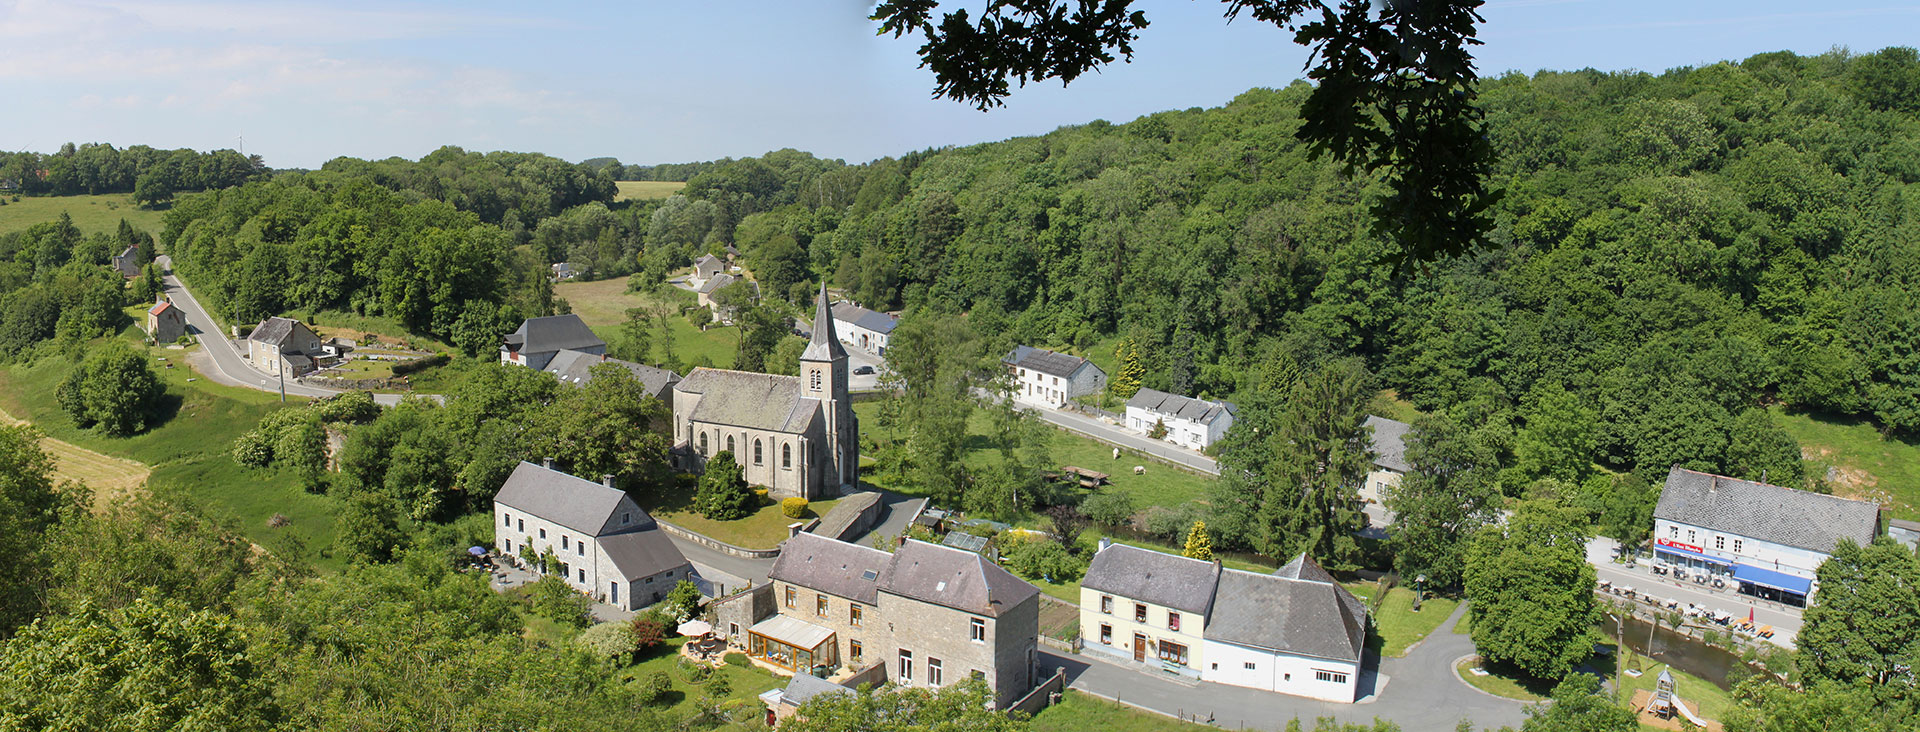 Les plus beaux villages de Wallonie - Lompret - clocher - nature - ciel bleu - paysage